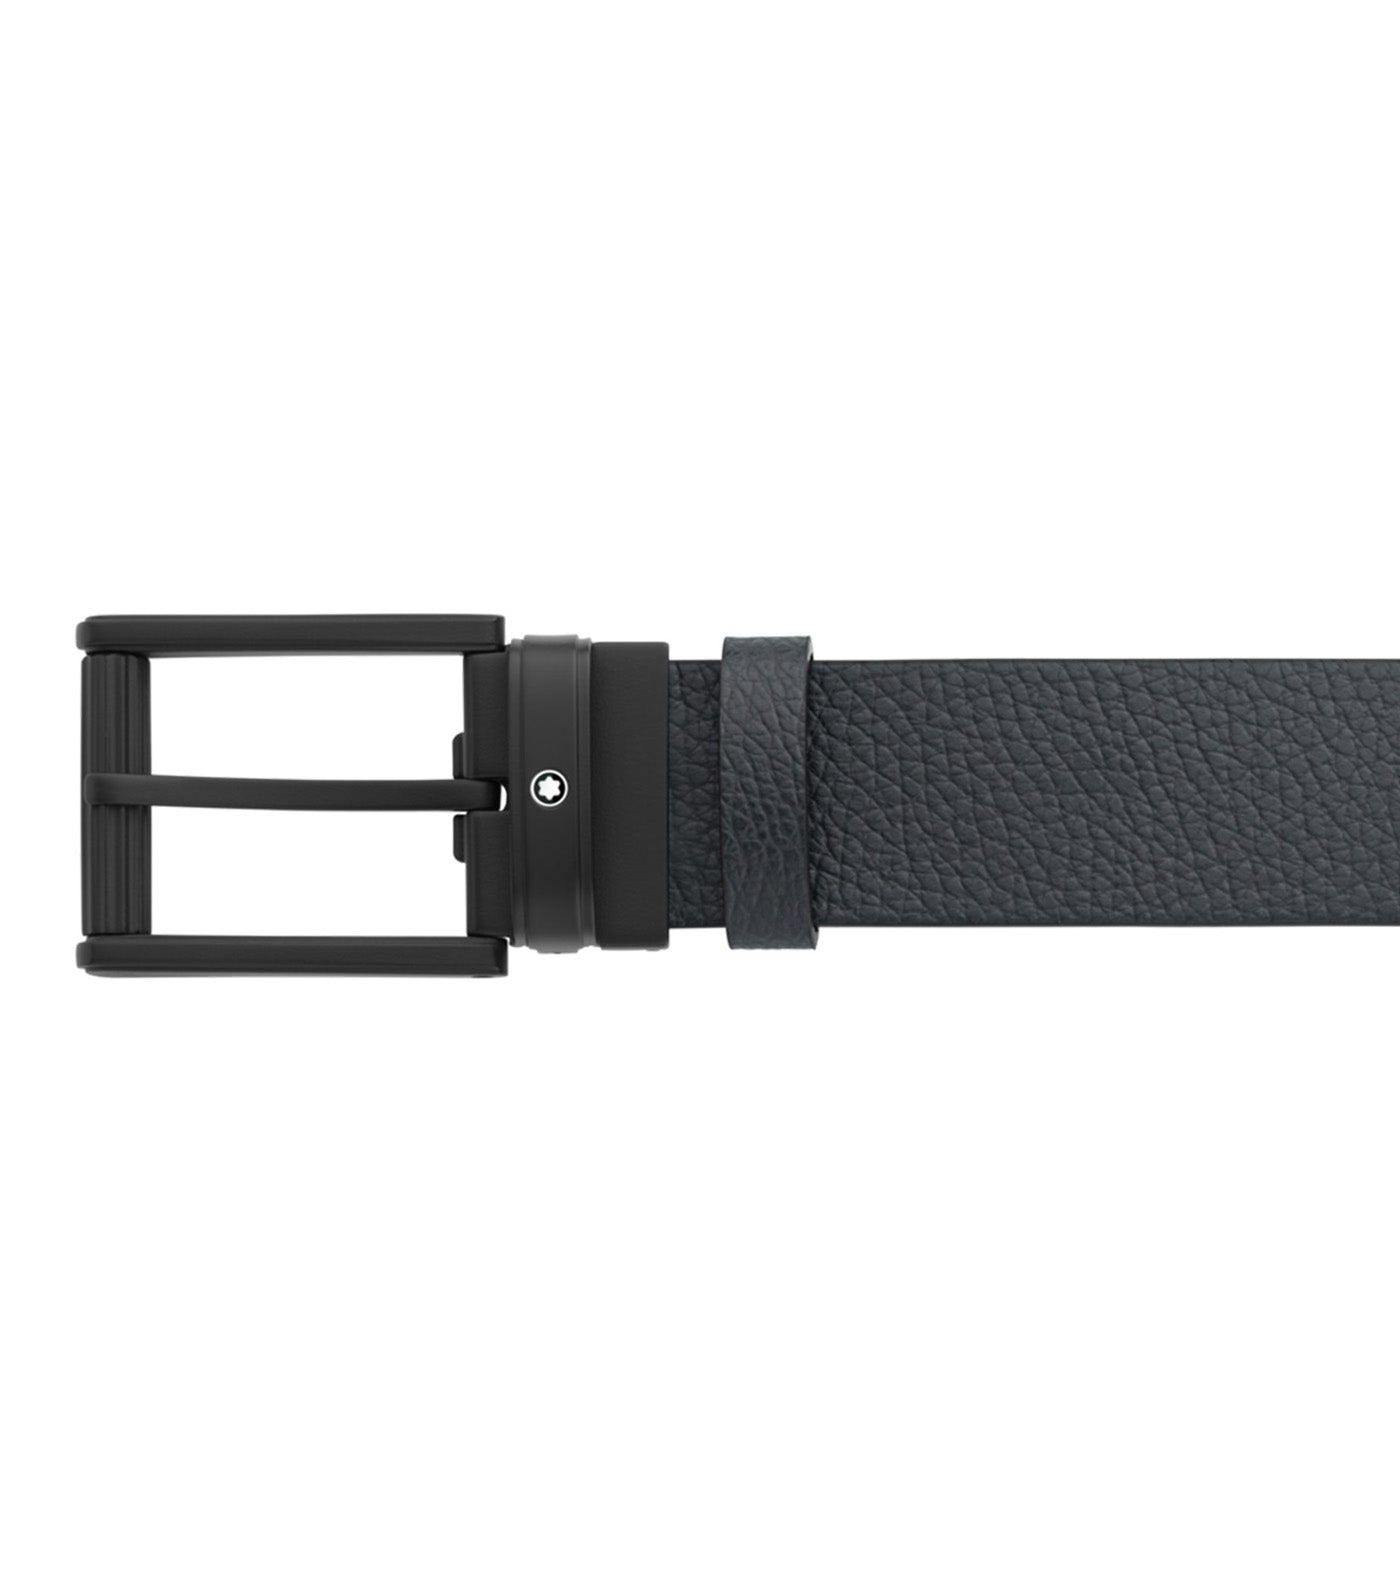 35mm Reversible Leather Belt Blue/Black